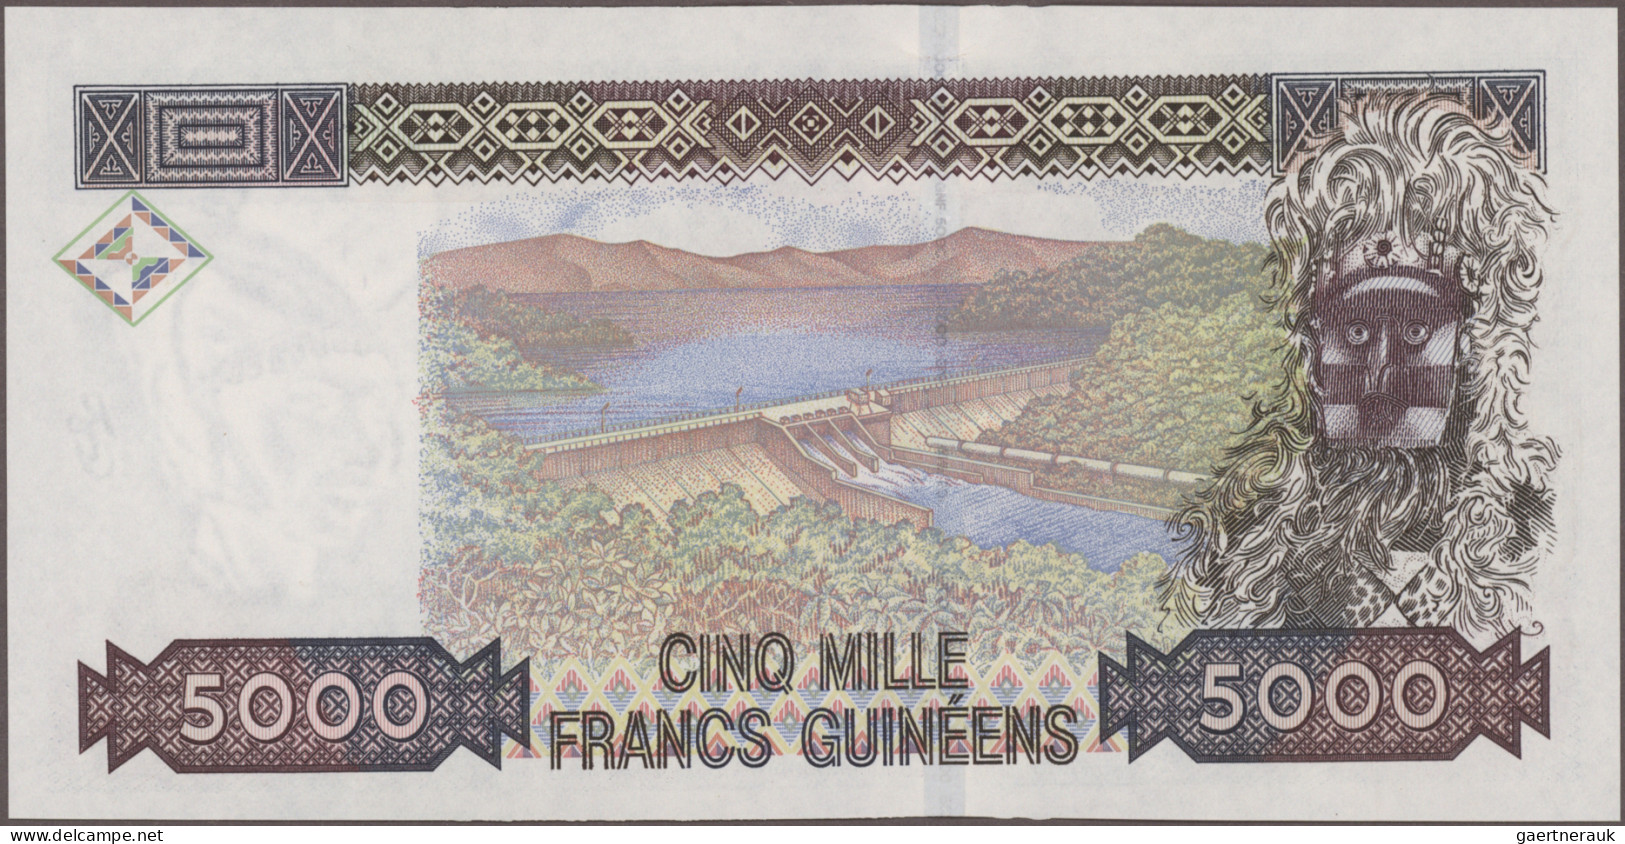 Guinea: Banque de la République de Guinée, huge lot with 30 banknotes, series 19